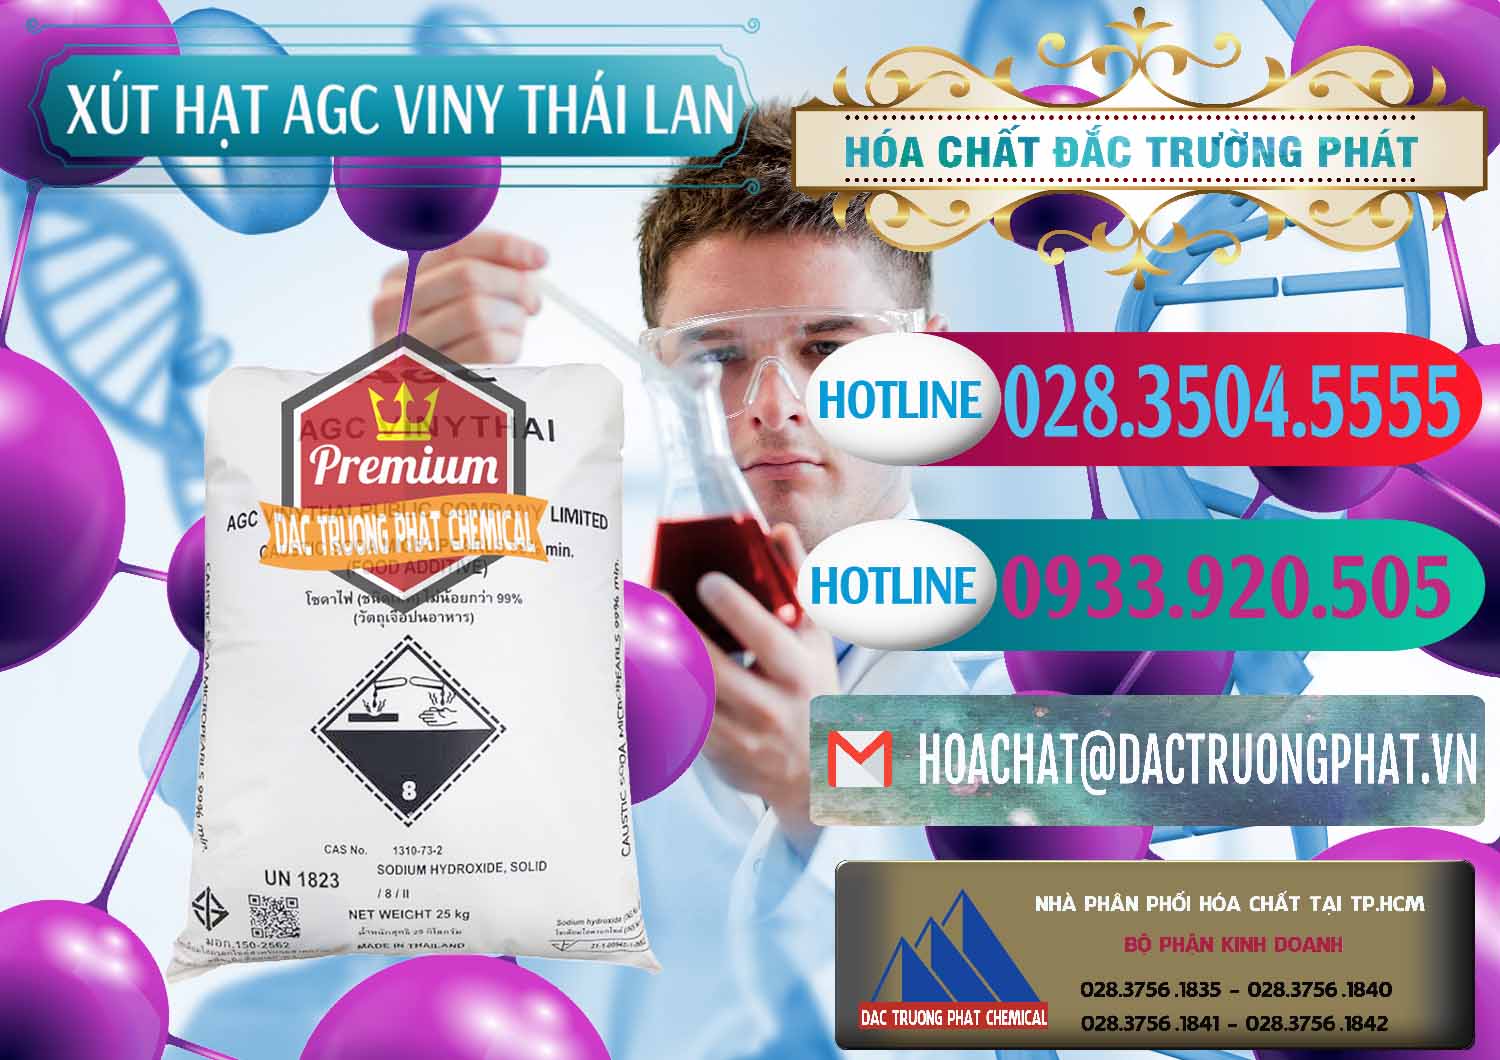 Chuyên bán và phân phối Xút Hạt - NaOH Bột 99% AGC Viny Thái Lan - 0399 - Nhà phân phối & kinh doanh hóa chất tại TP.HCM - truongphat.vn